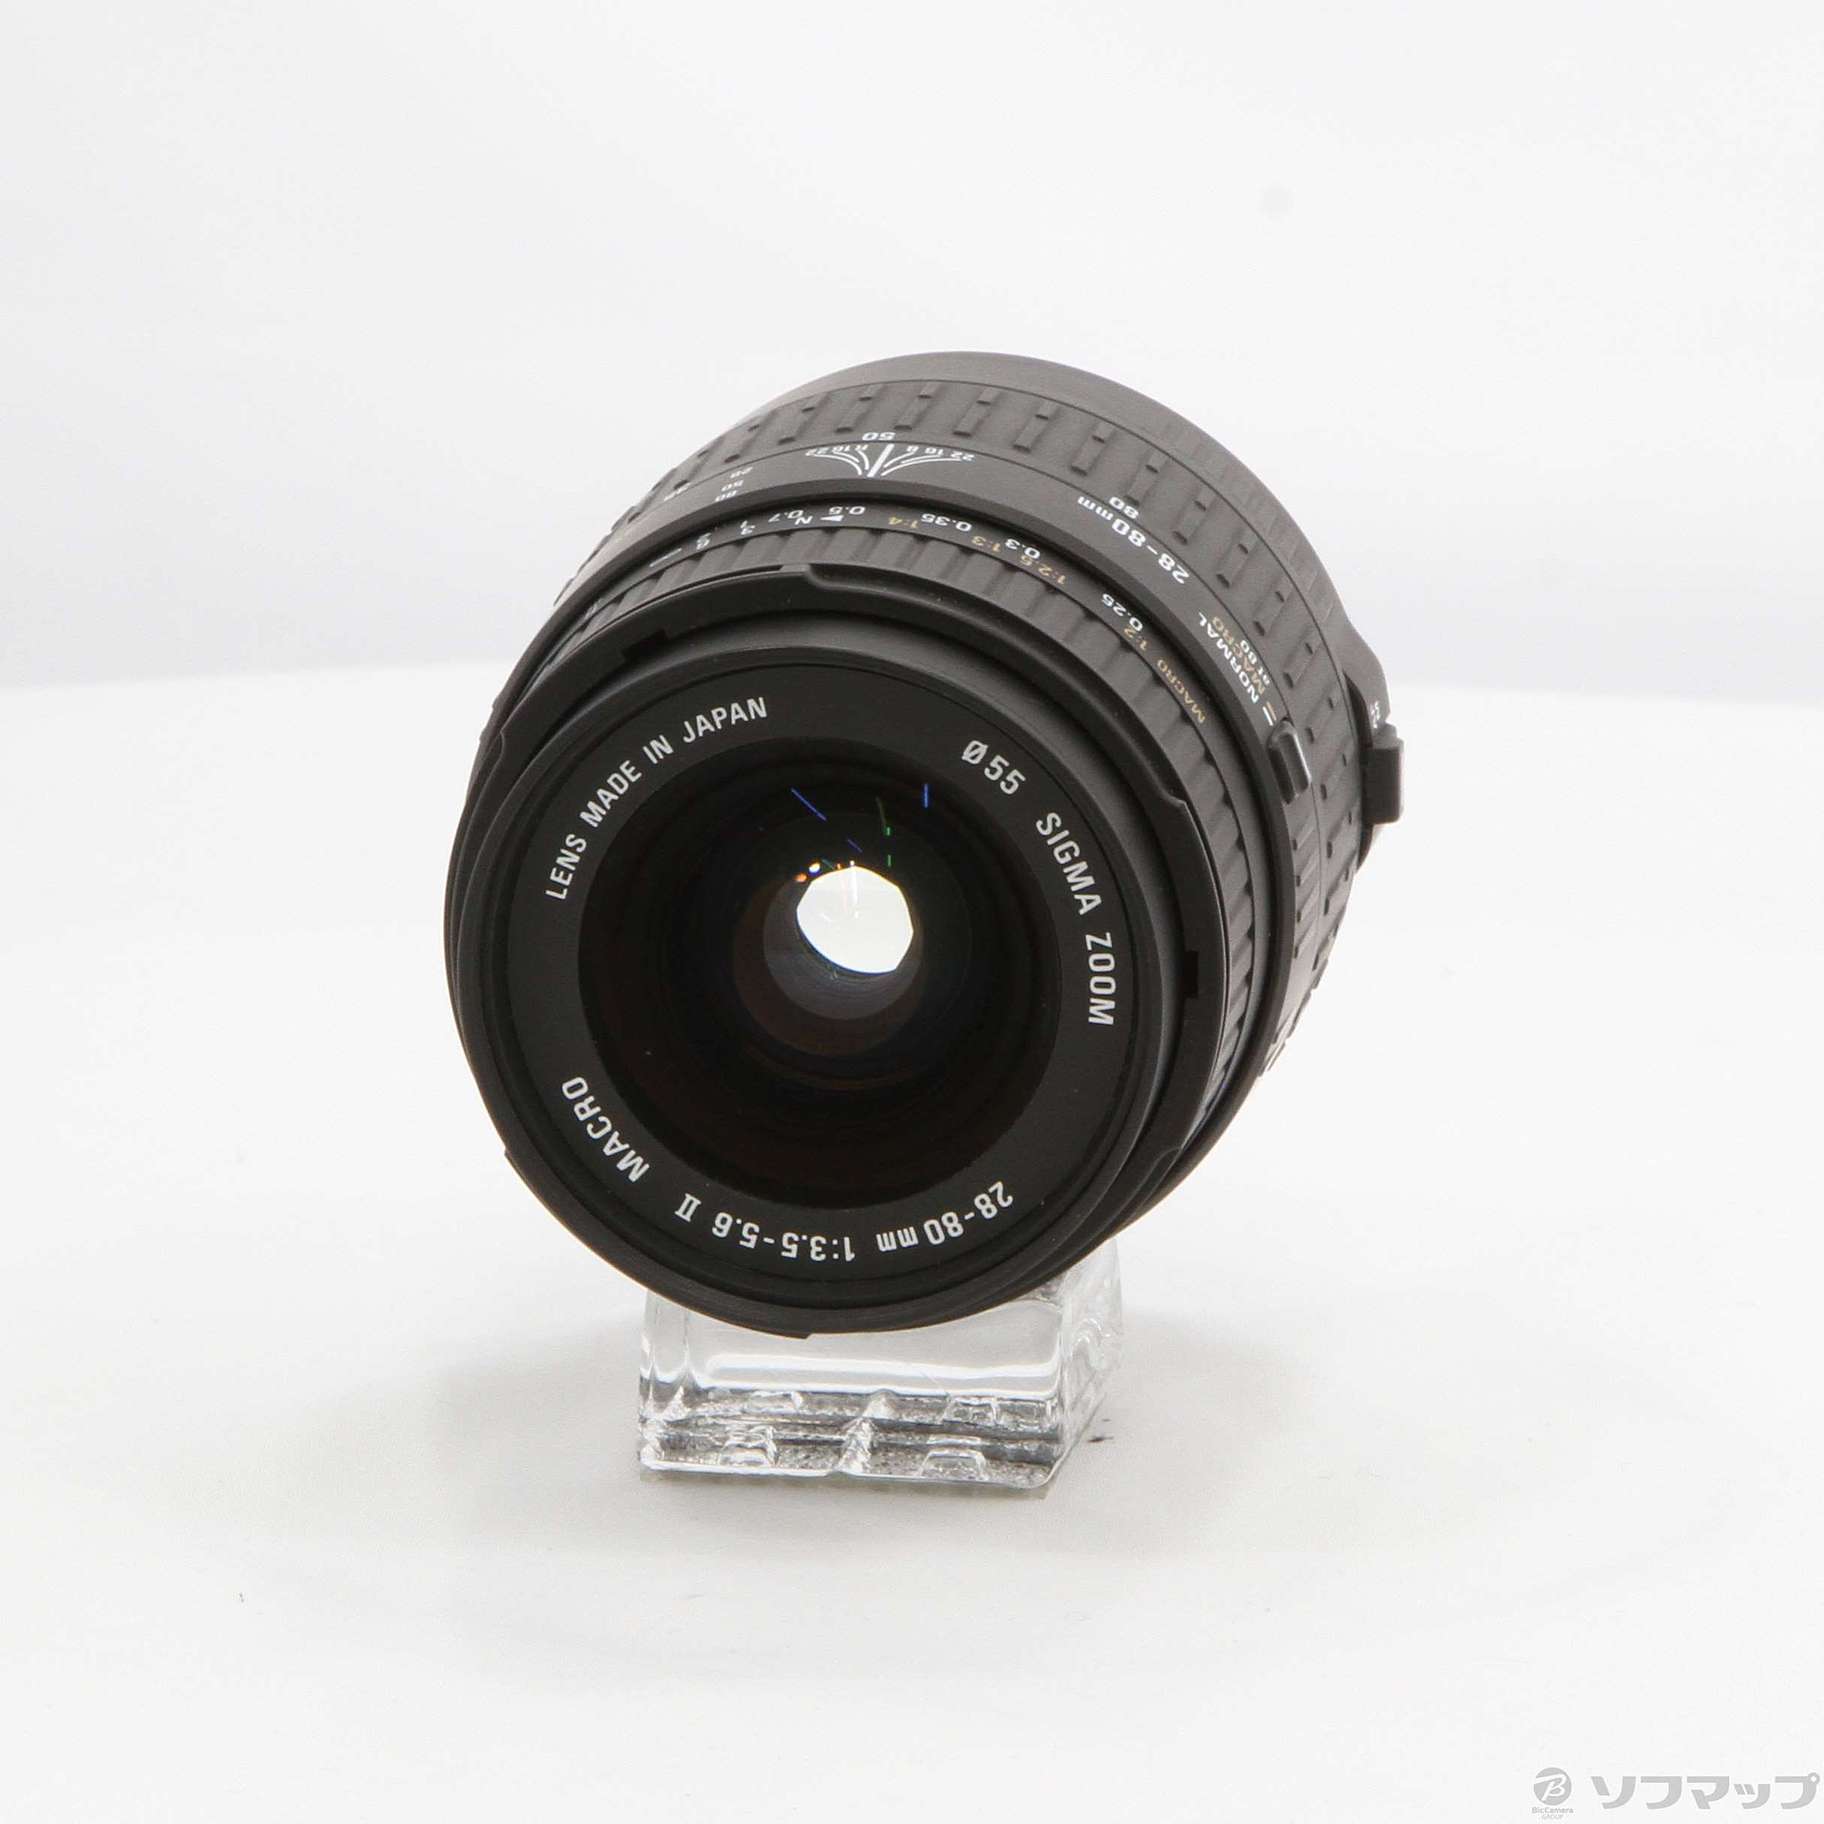 SIGMA AF 28-80mm F3.5-5.6 II ミニズームマクロ (Canon用) (レンズ)